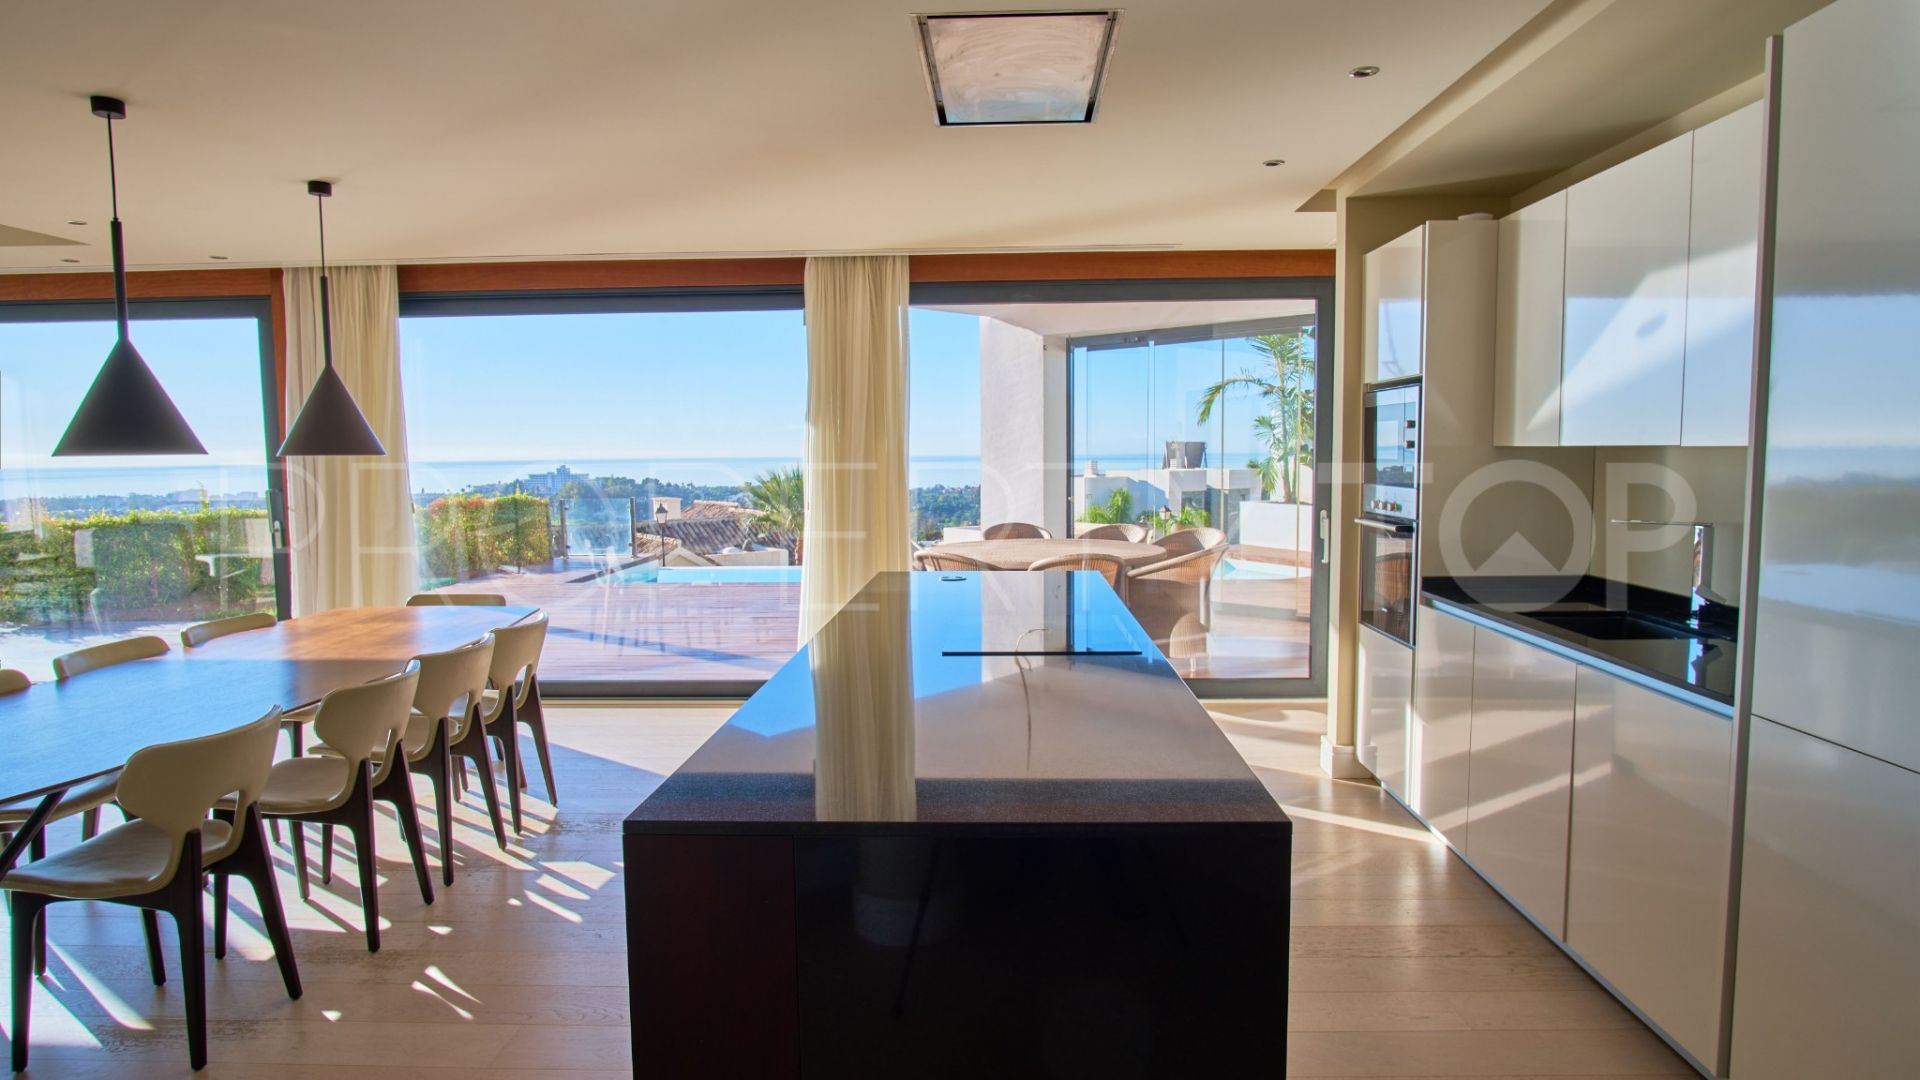 Villa en venta en Mirador del Paraiso con 6 dormitorios